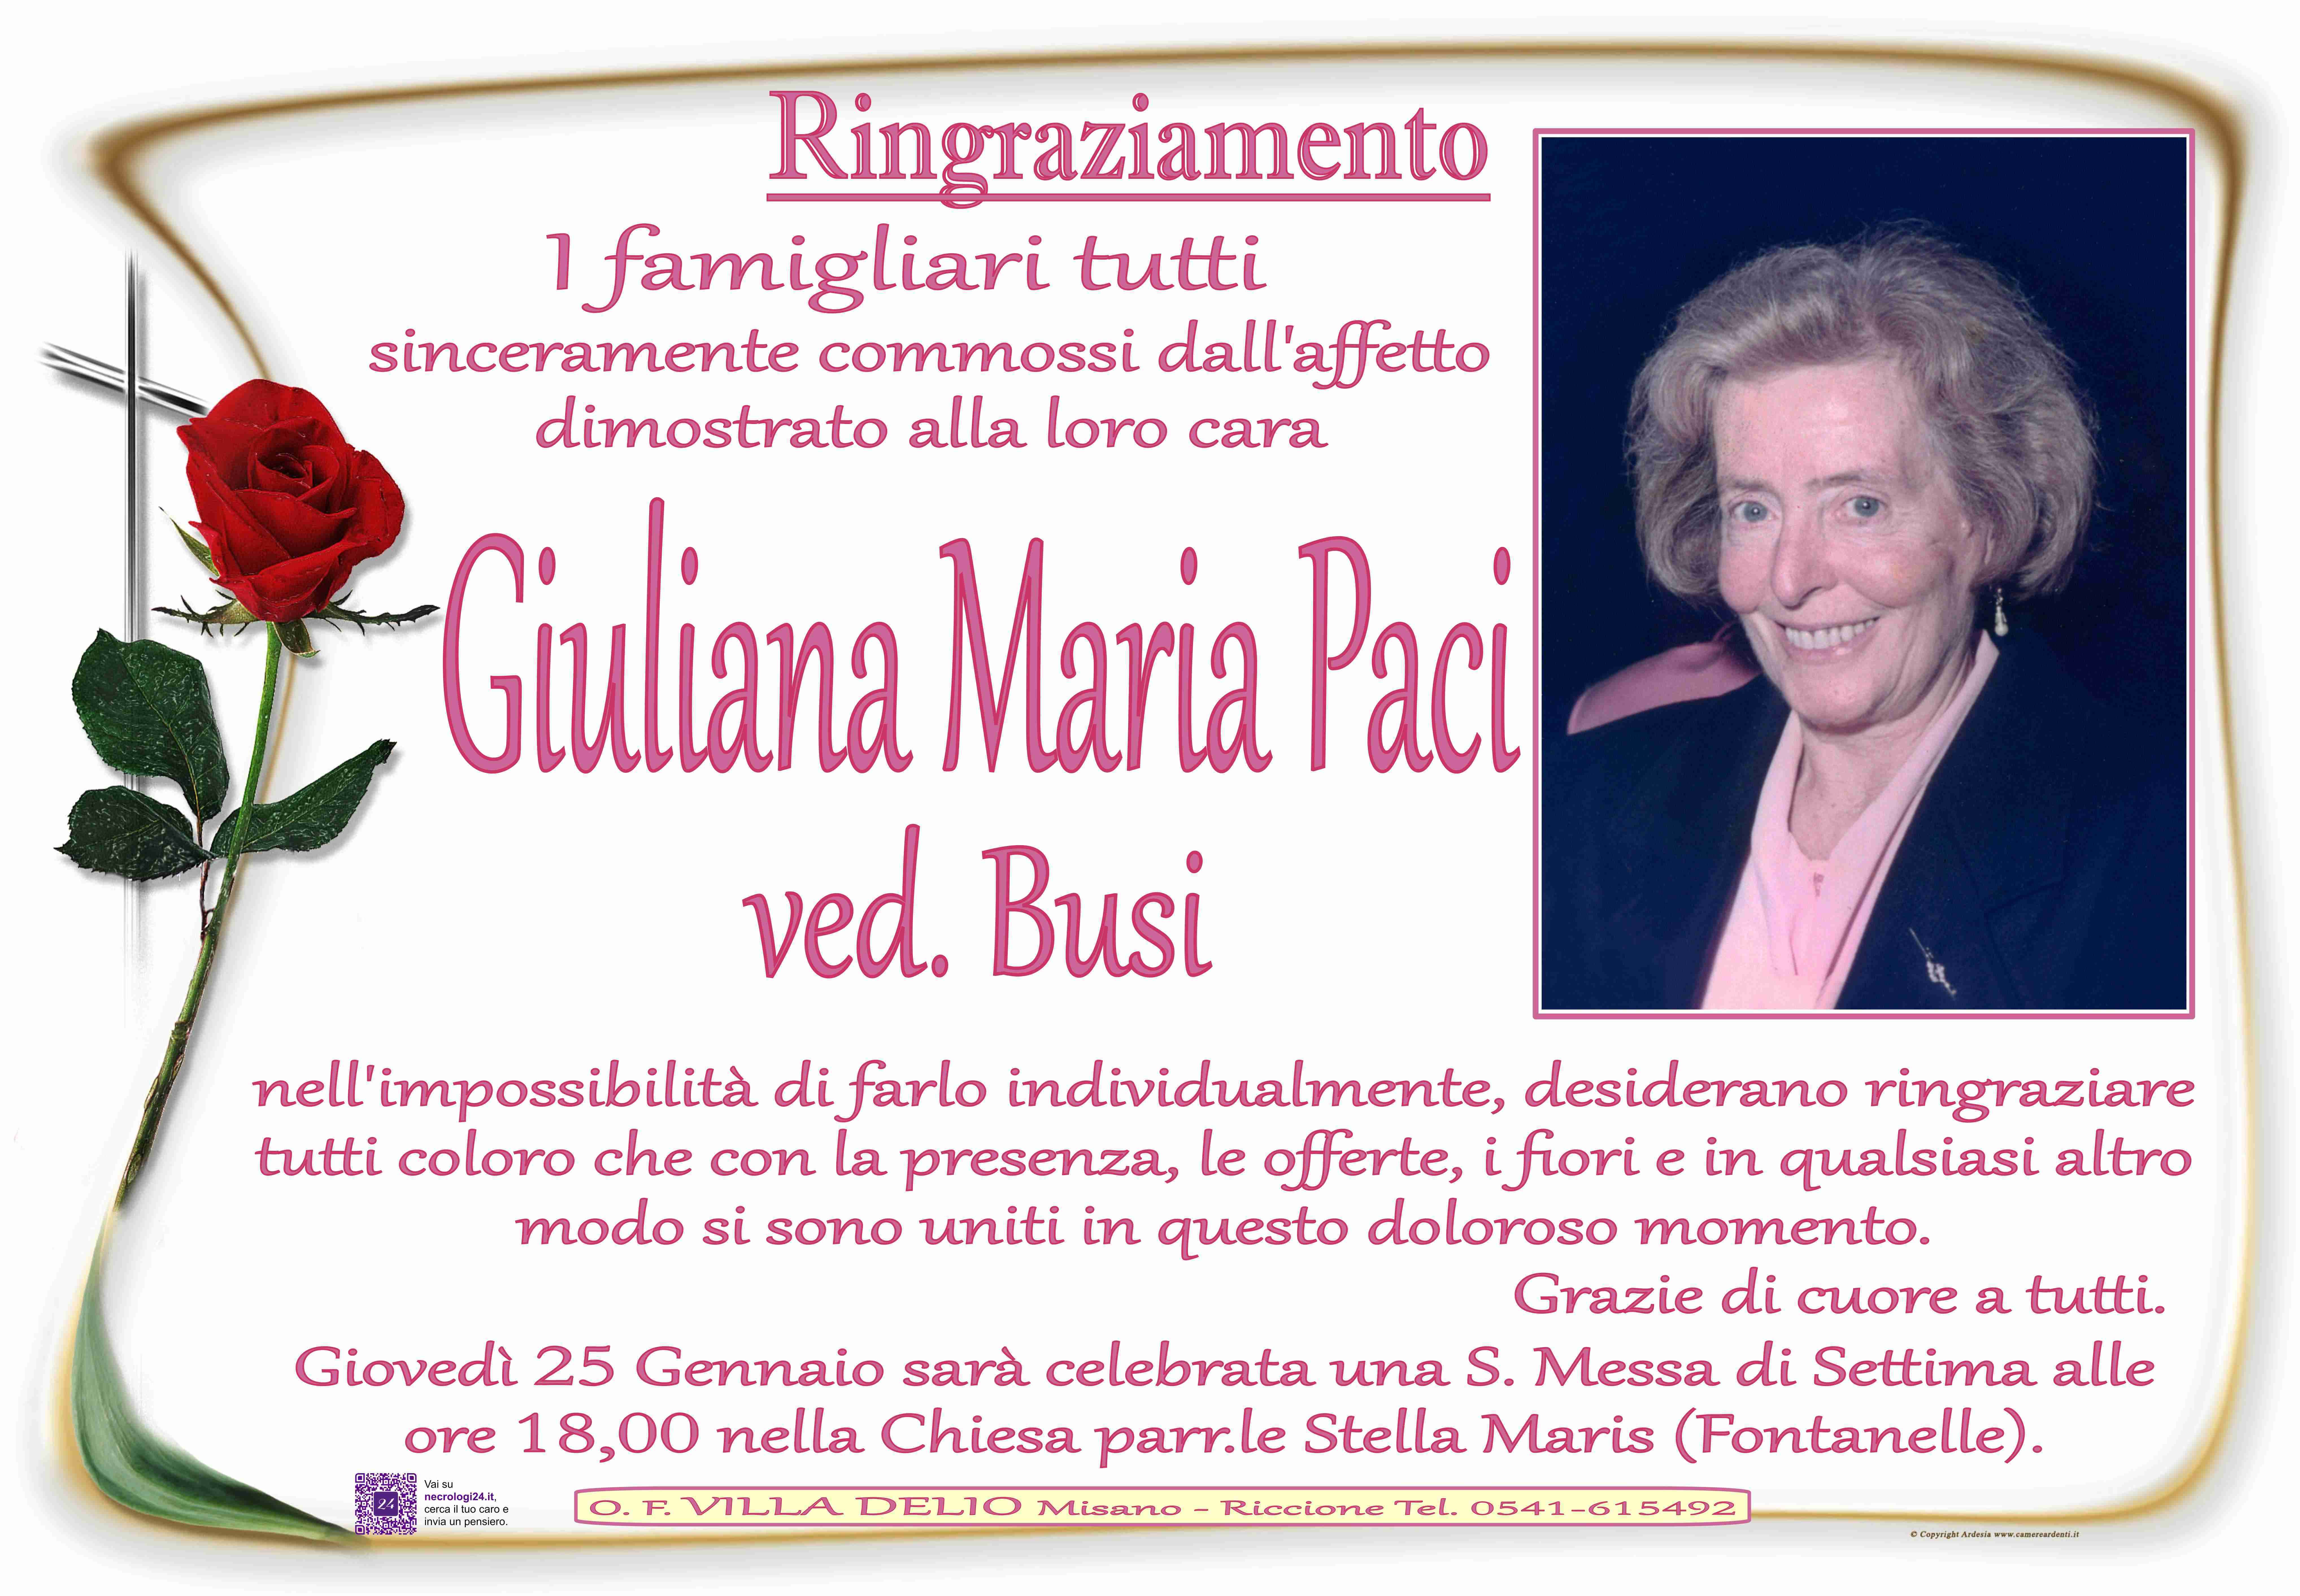 Giuliana Maria Paci